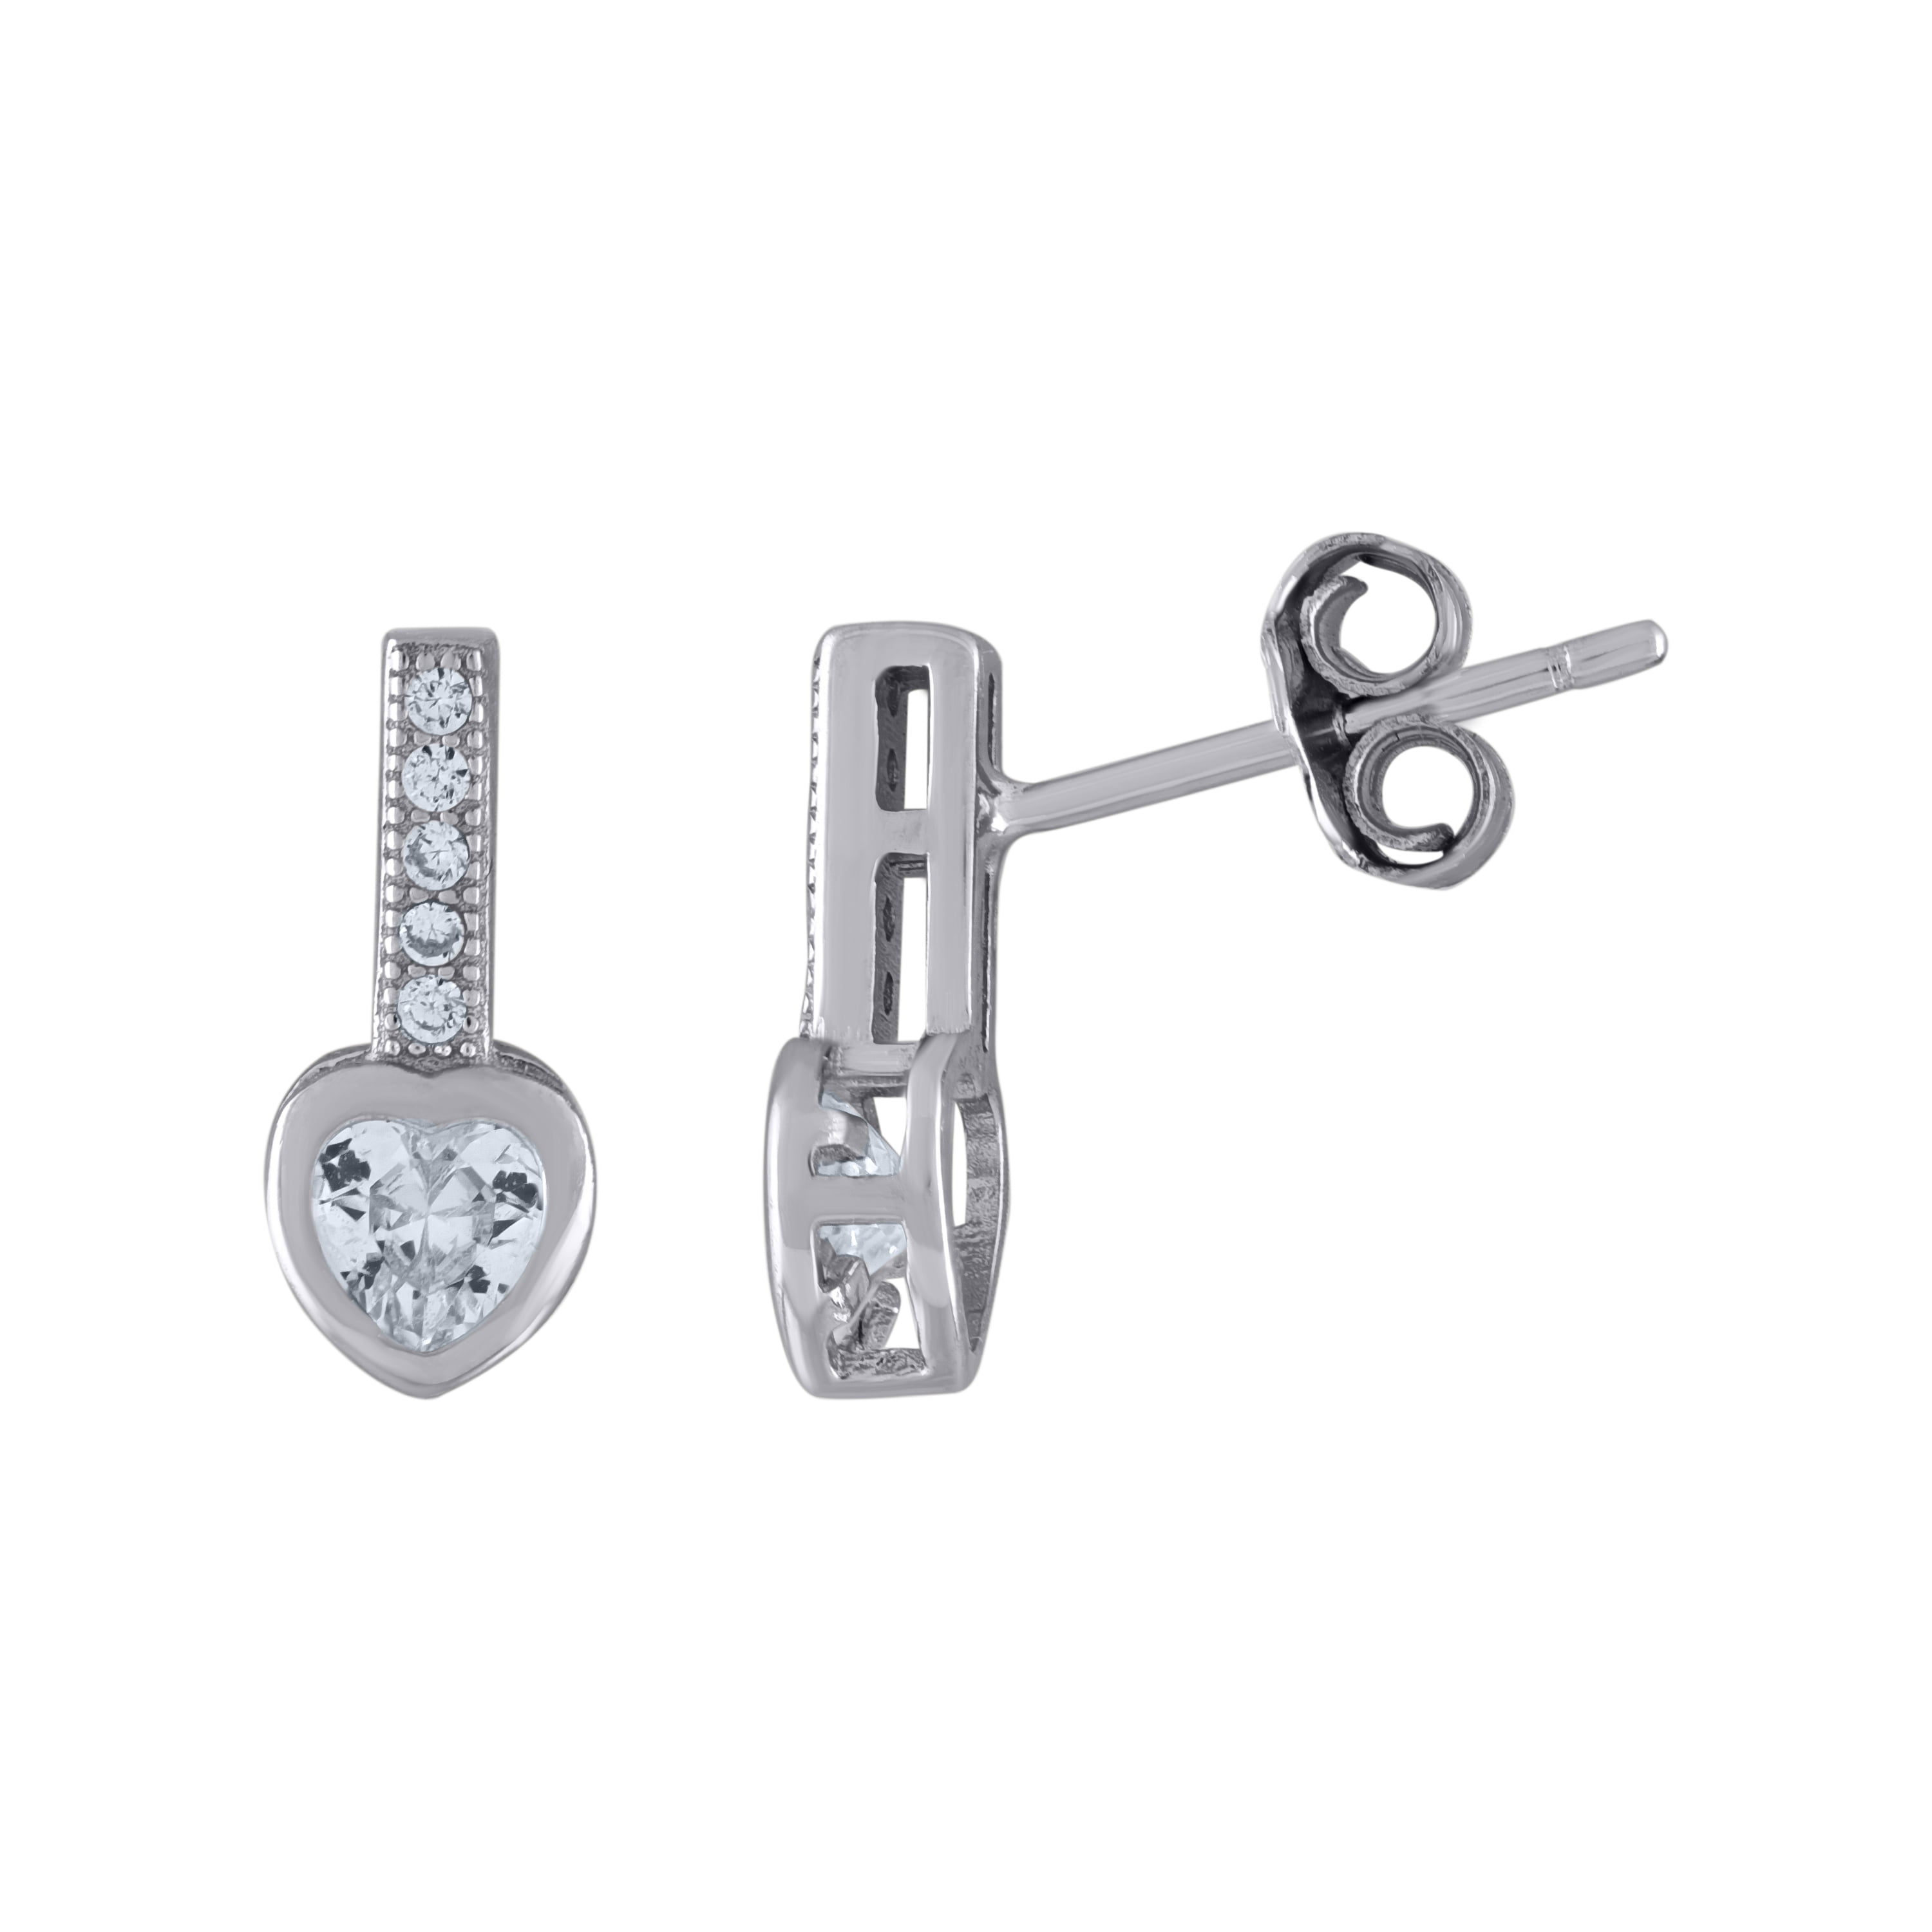 FB Jewels Solid 925 Sterling Silver 6mm Heart Basket Set Cubic Zirconia CZ Stud Earrings